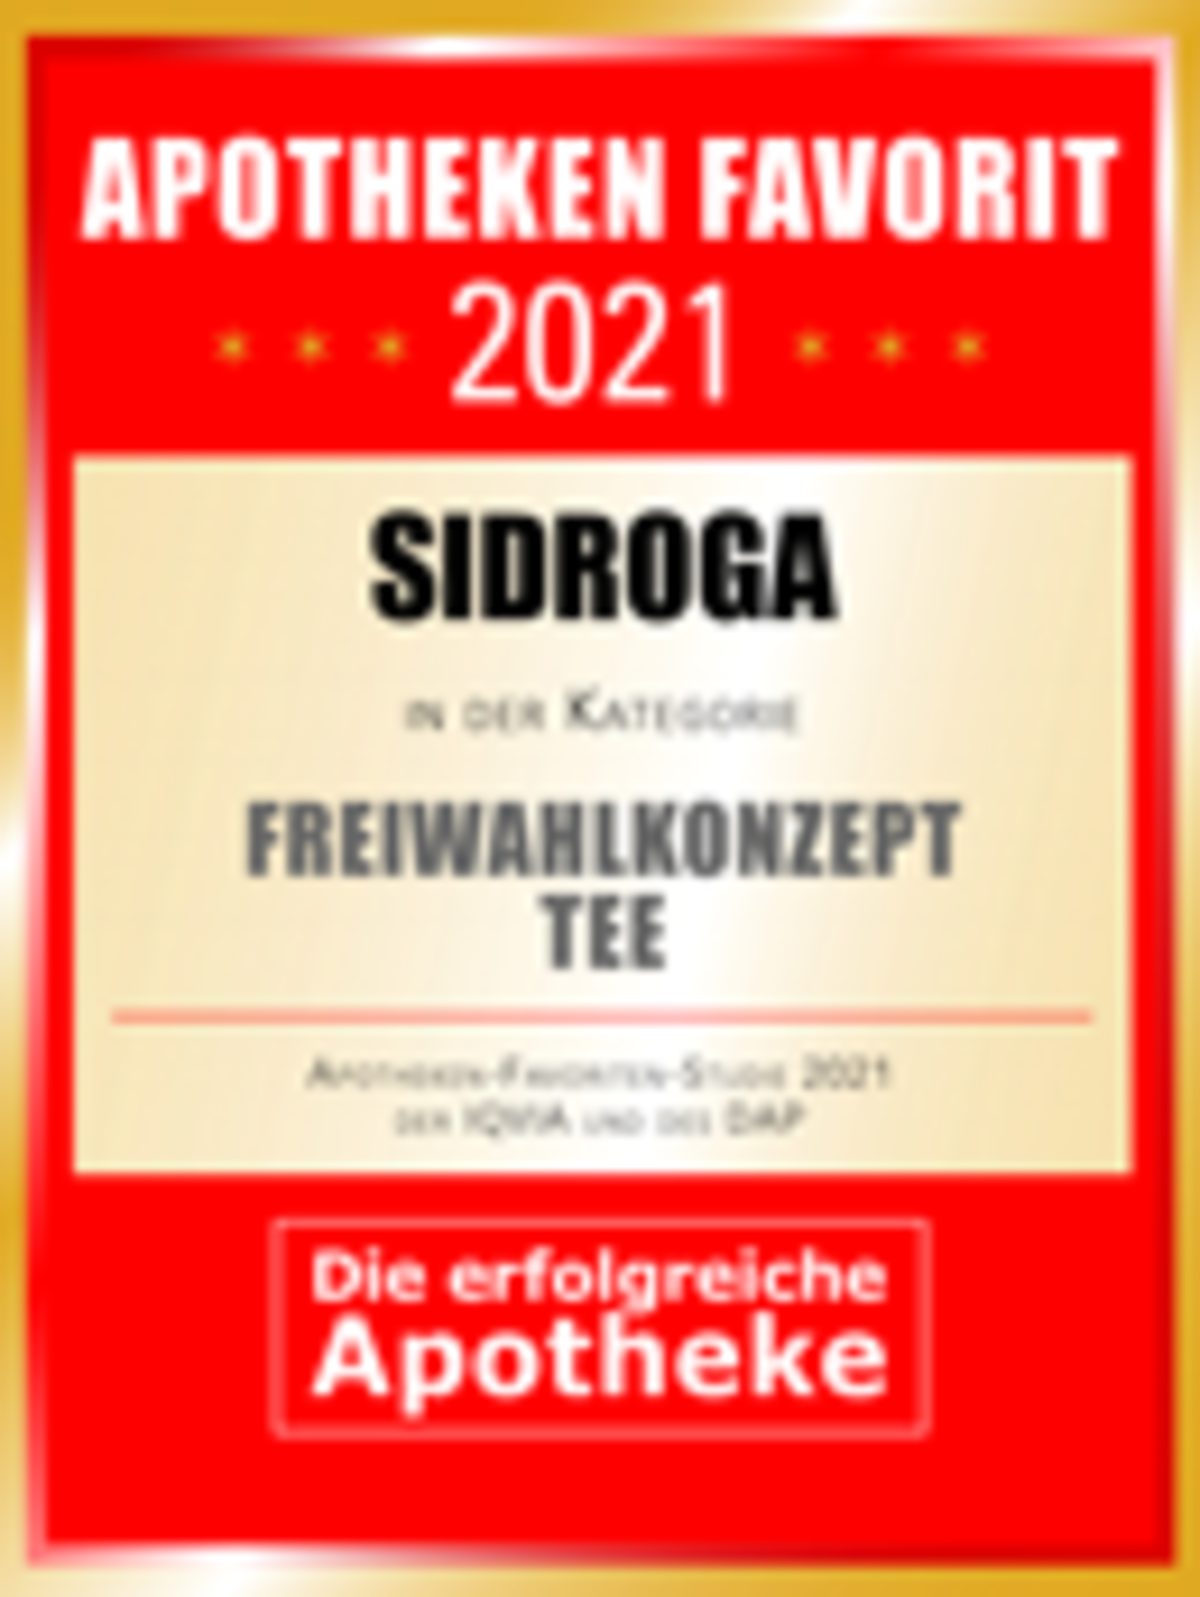 Logo Apothekenfavorit 2021